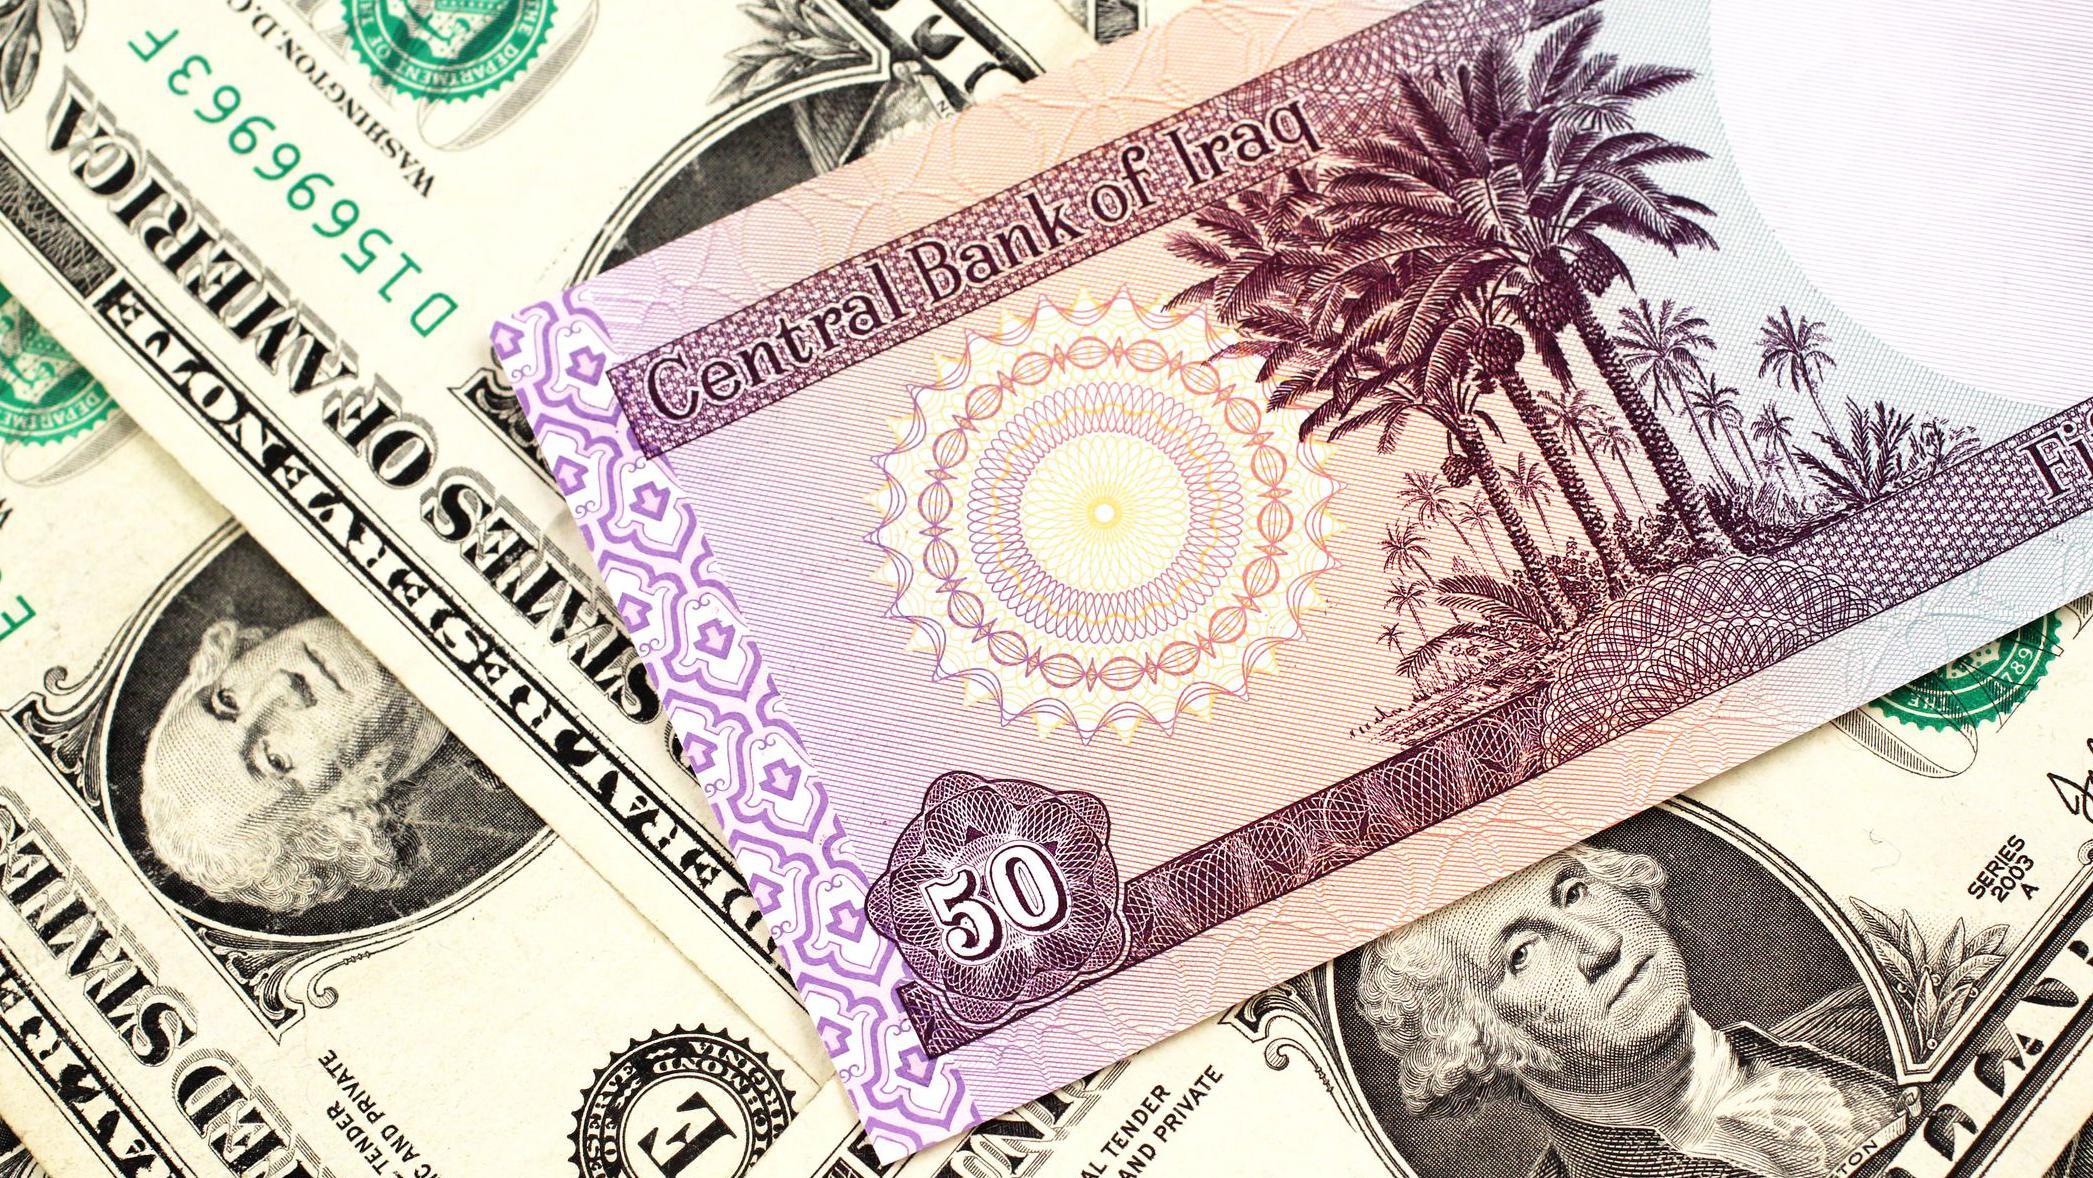 يدفع المستوردون العراقيون الدينار العراقي للمصارف مقابل الحصول على الدولار